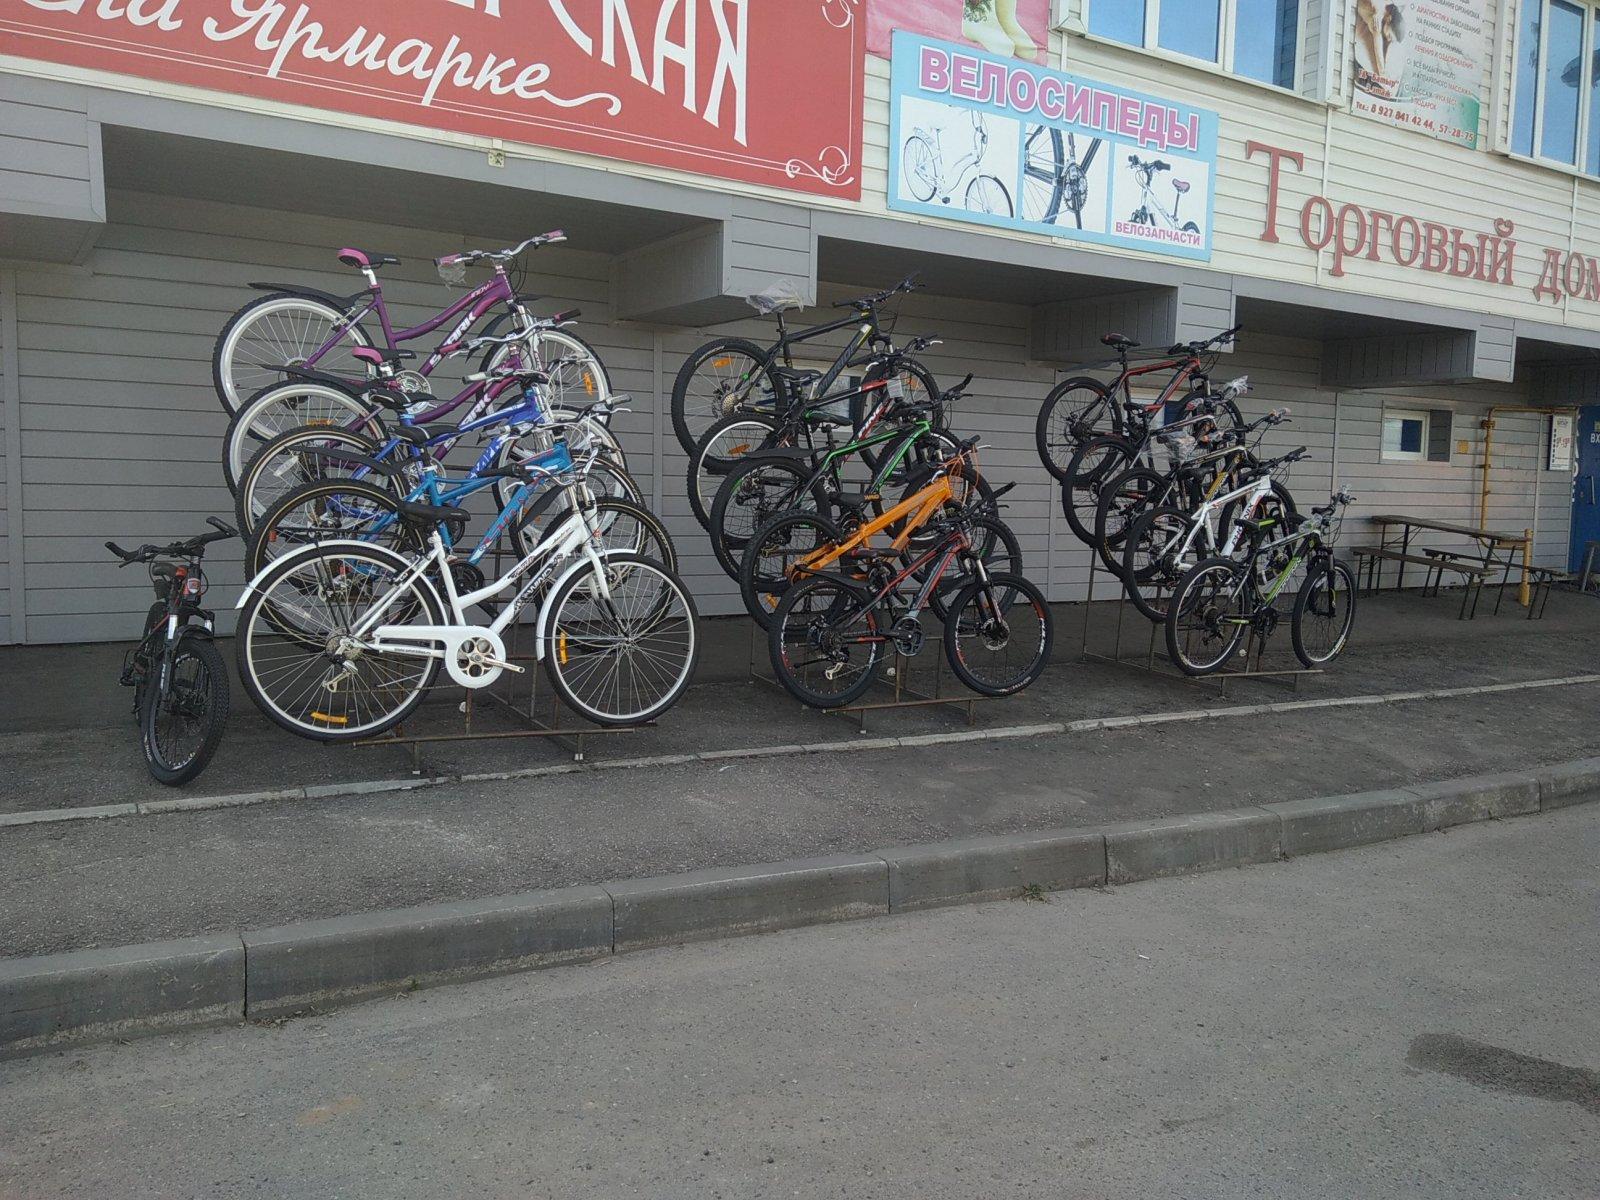 Купить велосипед в чебоксарах. Веломагазин Стерлитамак. Бабушкин велосипед. Веломагазин Чебоксары. Магазин велосипедов в Нижнем Новгороде.